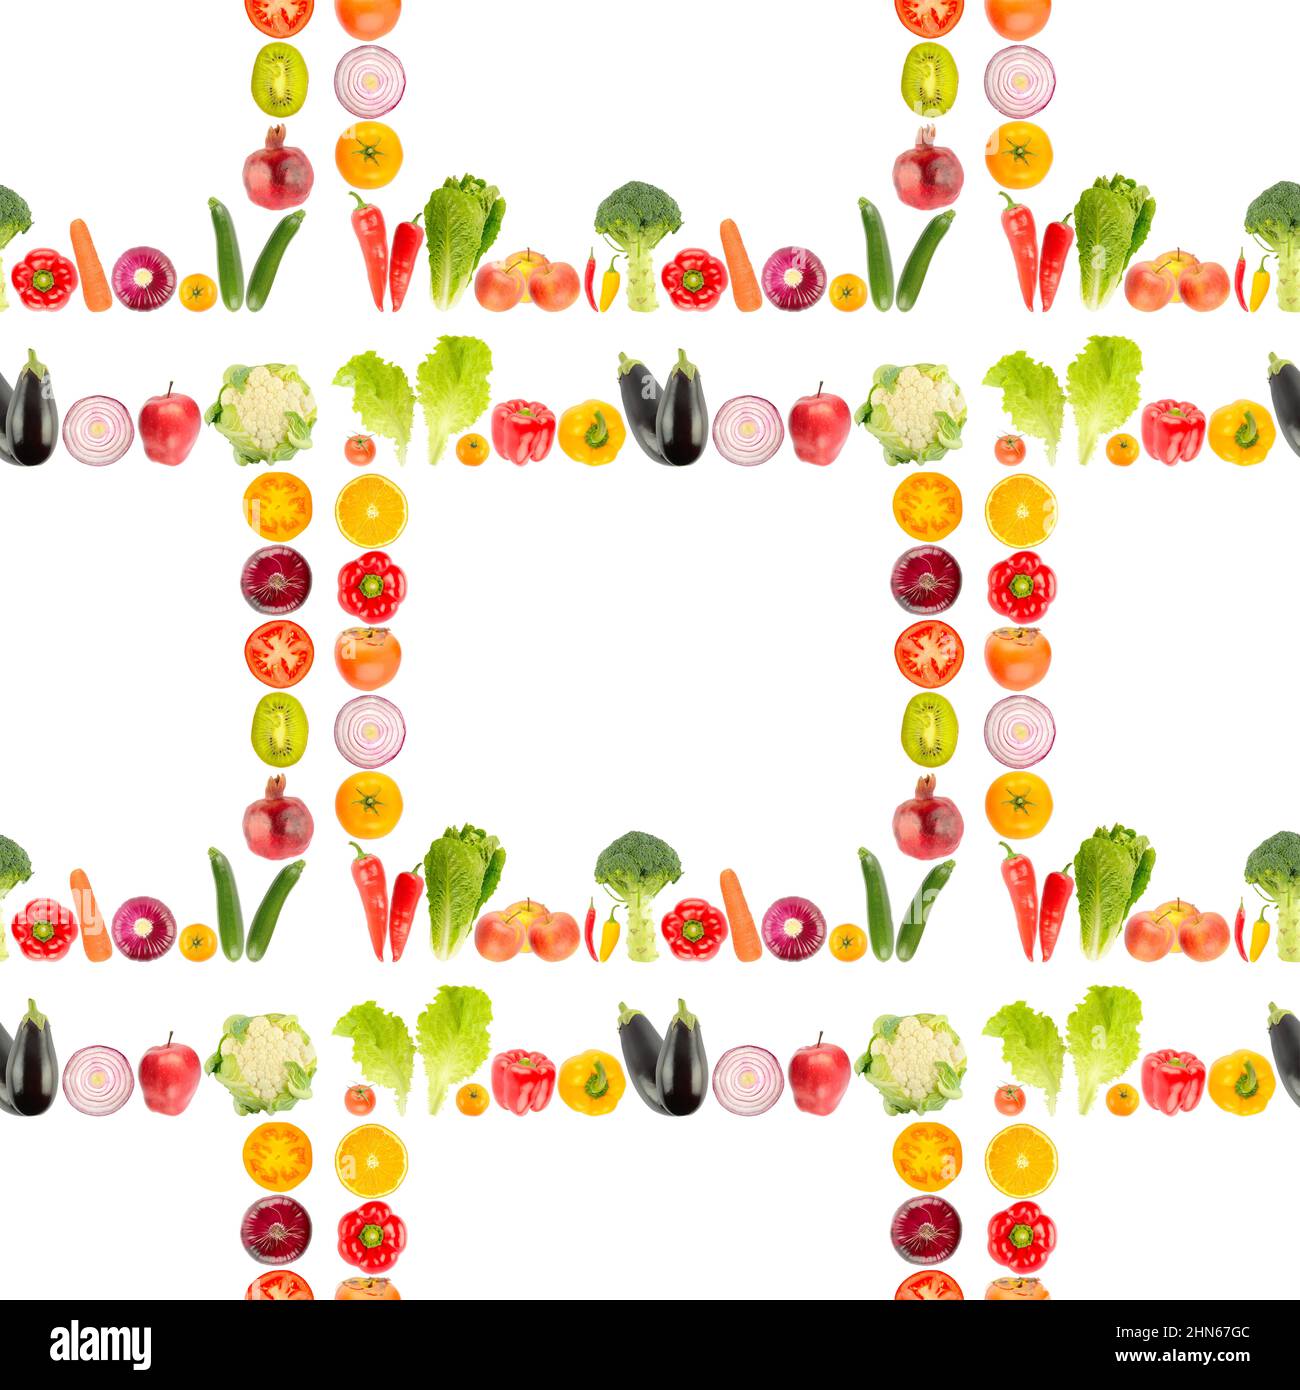 Motif sans couture provenant d'un grand nombre de fruits et légumes frais et lumineux, isolés sur fond blanc. Banque D'Images